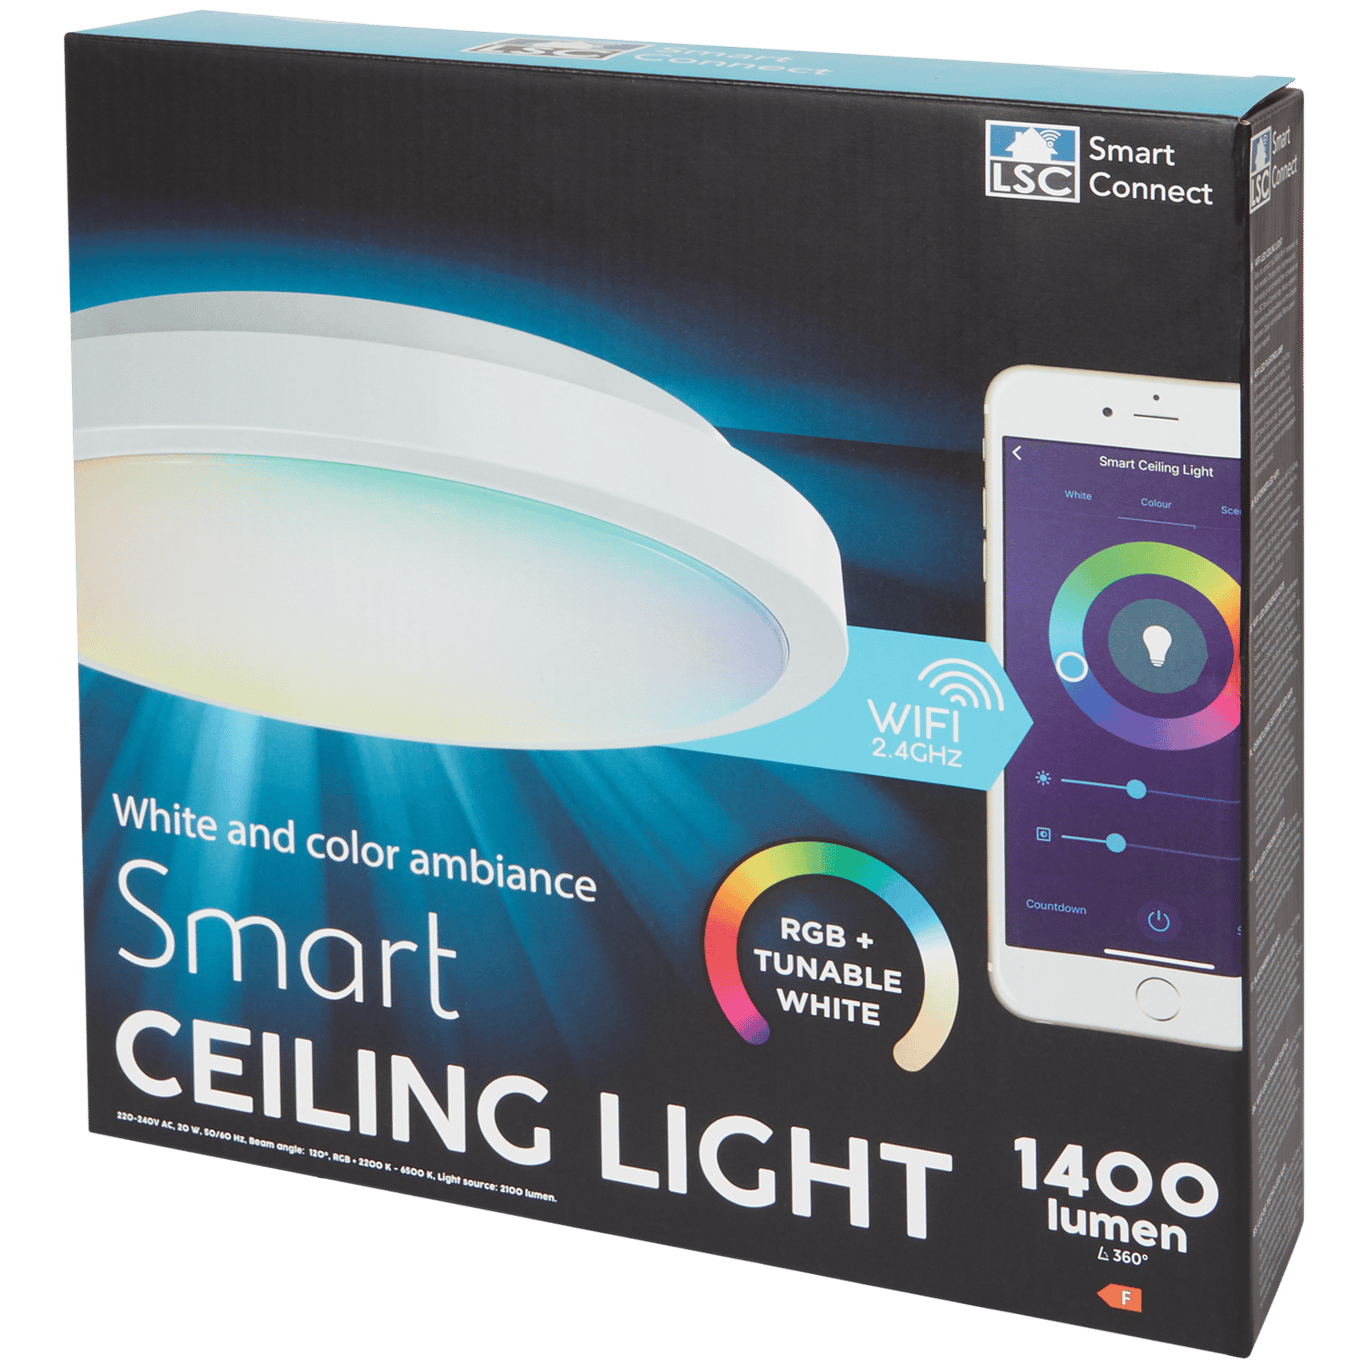 Vooruit Moeras strottenhoofd LSC Smart Connect plafondlamp | Action.com